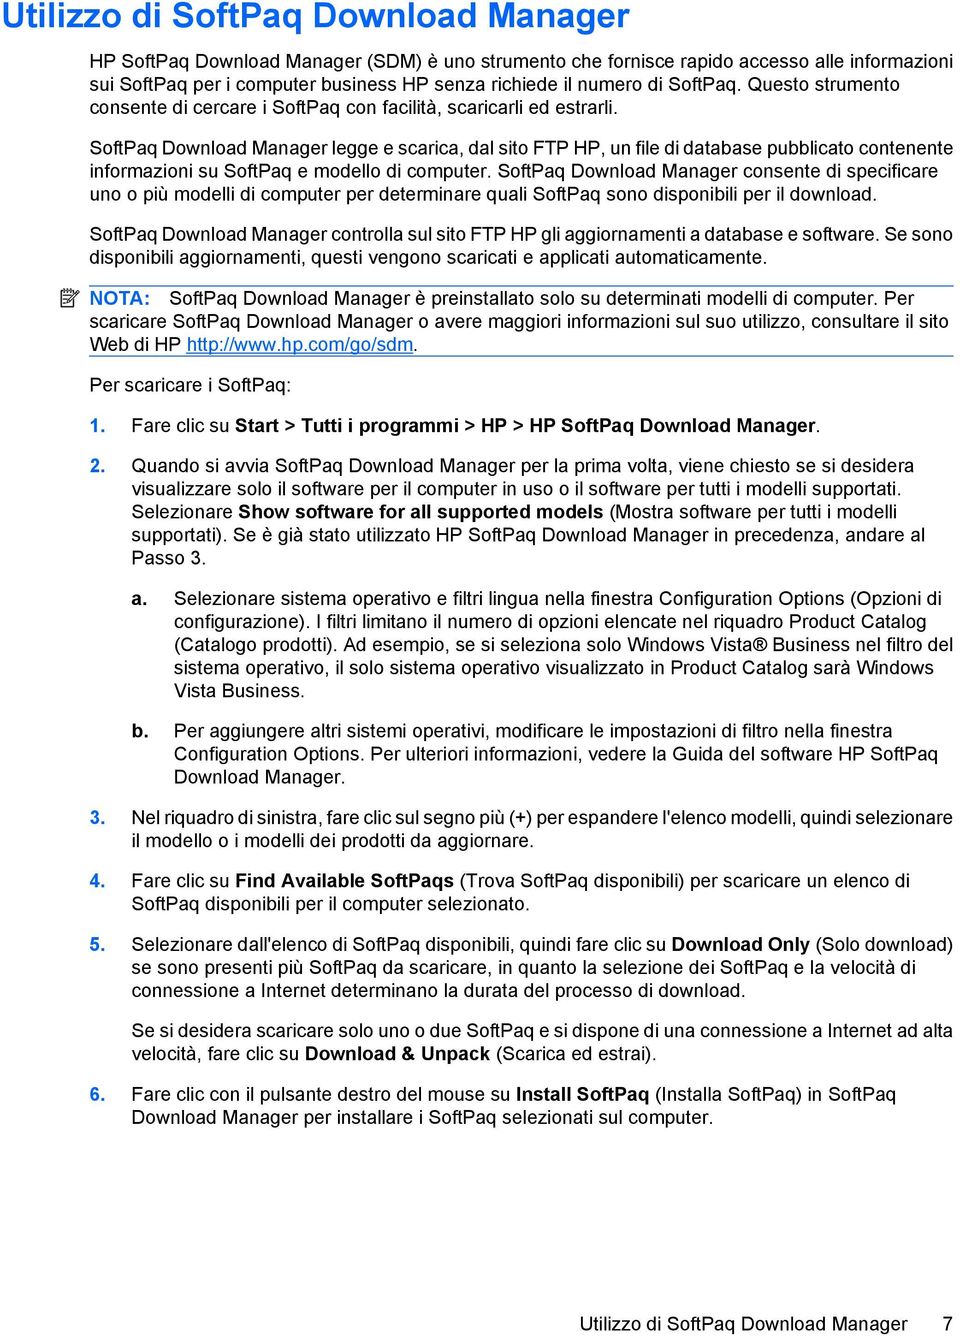 SoftPaq Download Manager legge e scarica, dal sito FTP HP, un file di database pubblicato contenente informazioni su SoftPaq e modello di computer.